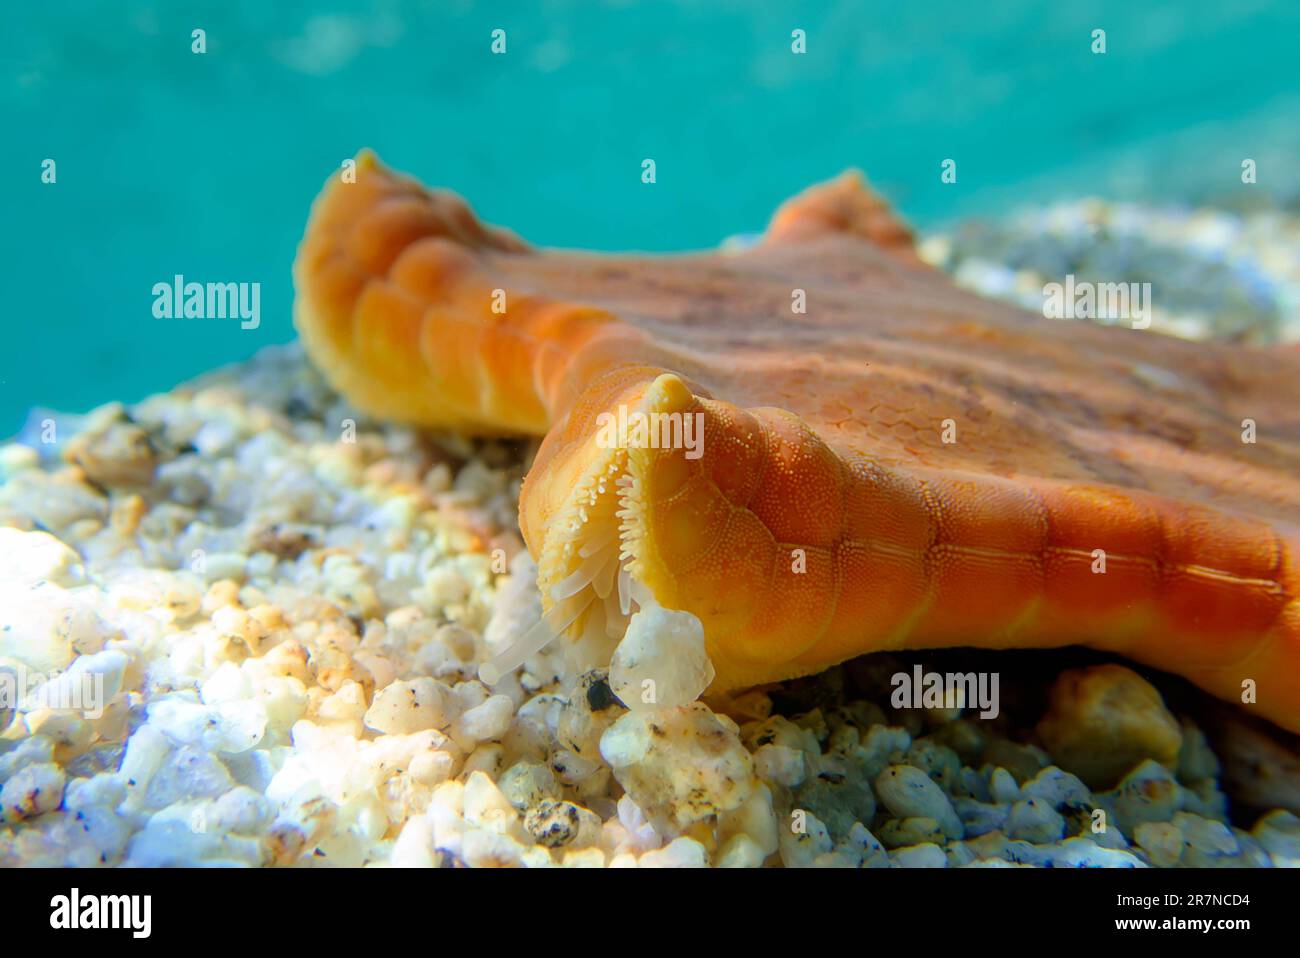 Placenta biscuit starfish, Underwater image into the Mediterranean Sea - (Sphaerodiscus placenta) Stock Photo